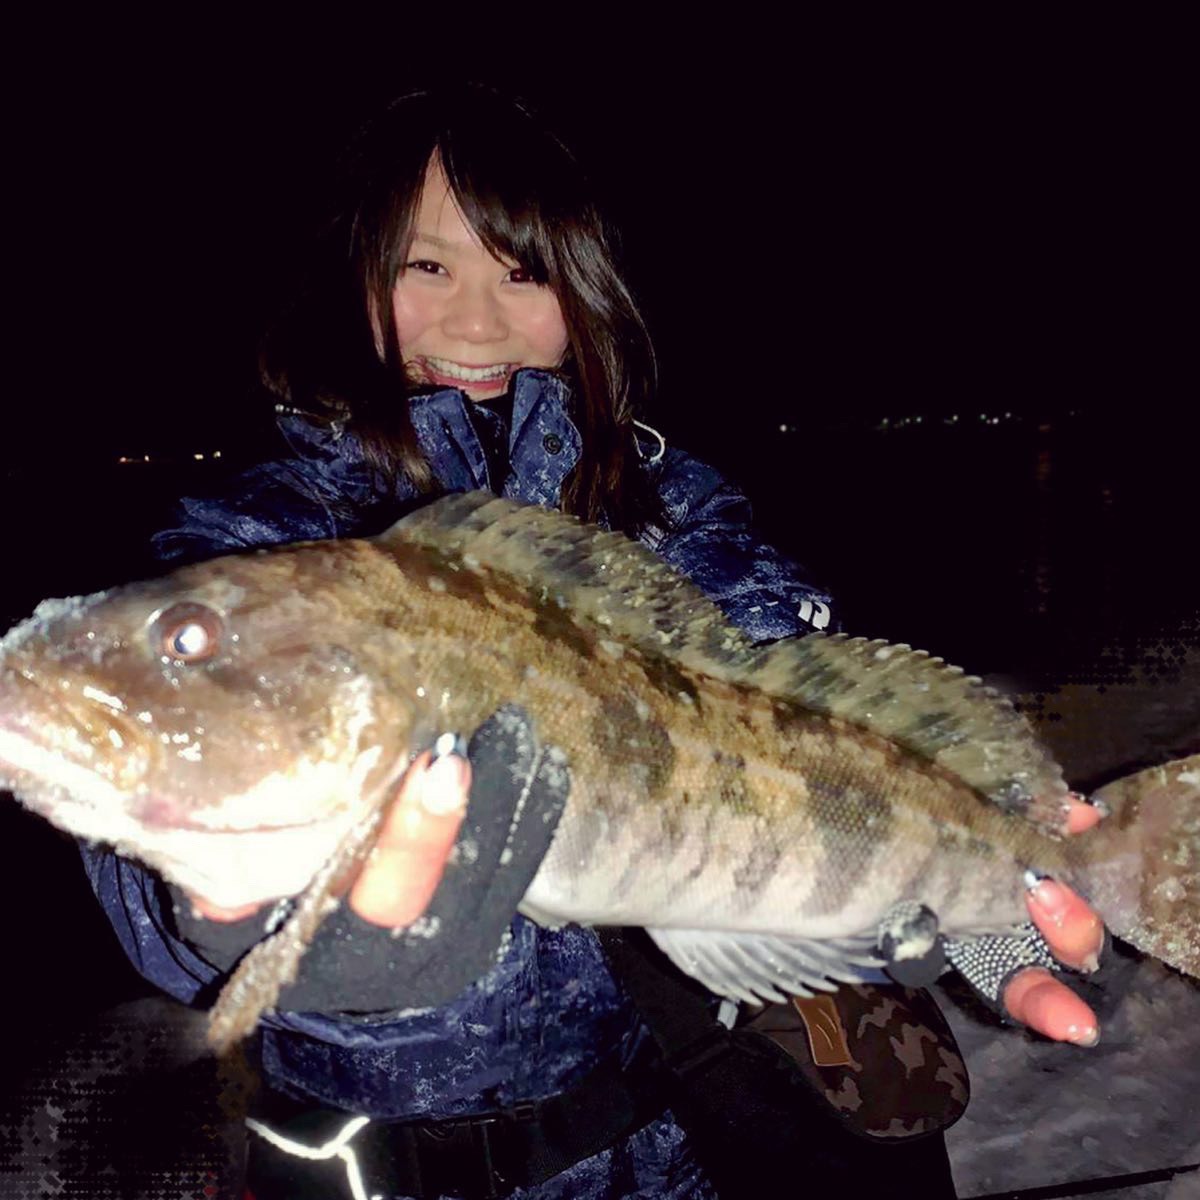 夜アブシーズン開幕in北海道 釣りガール 女性のための釣りコミュニティ